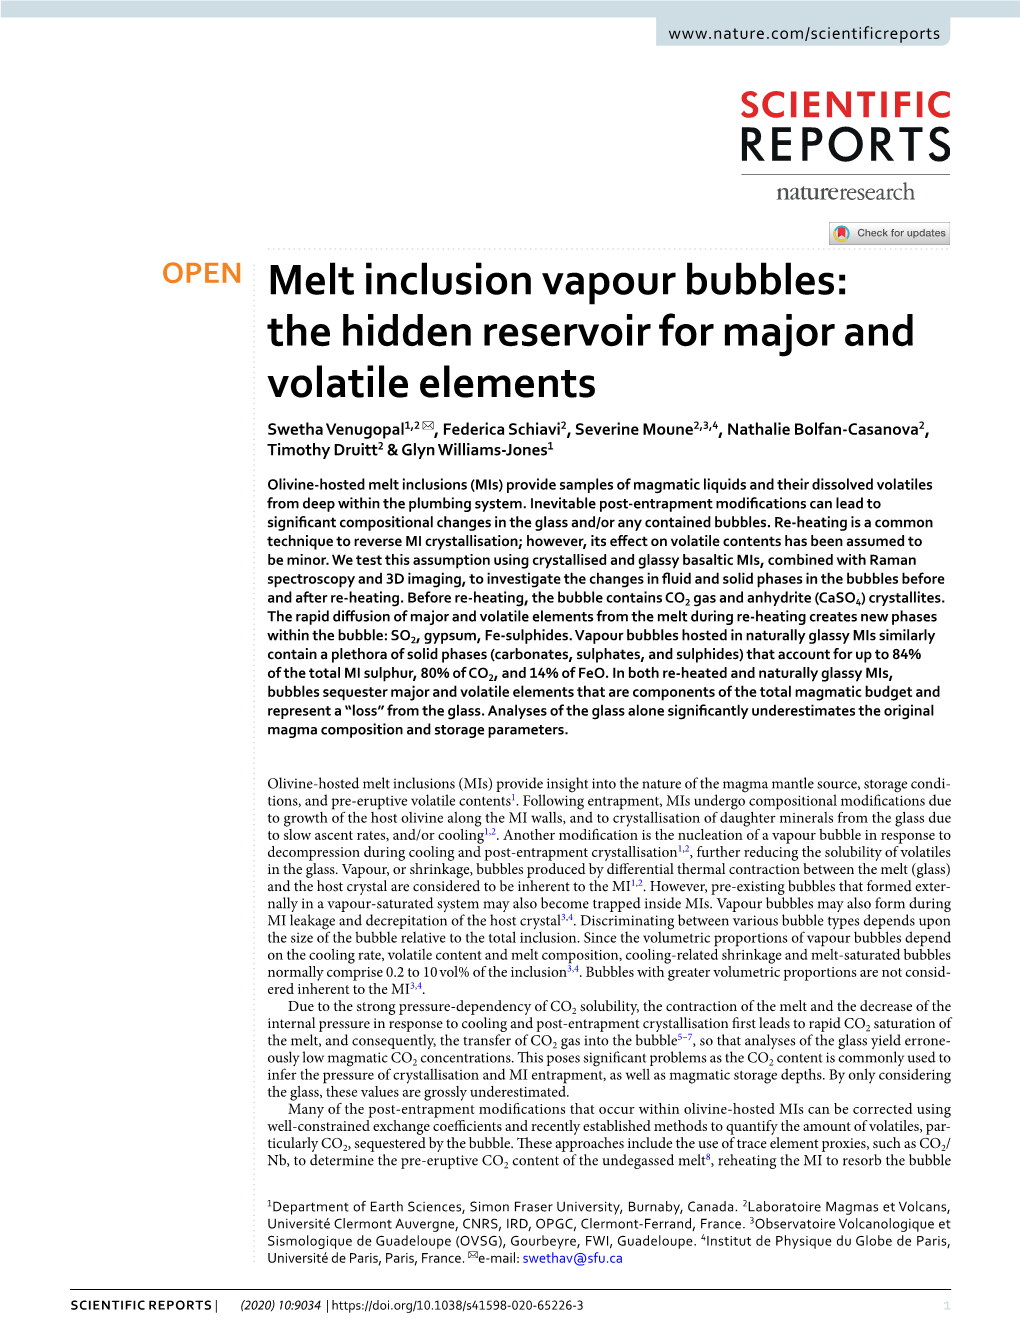 Melt Inclusion Vapour Bubbles